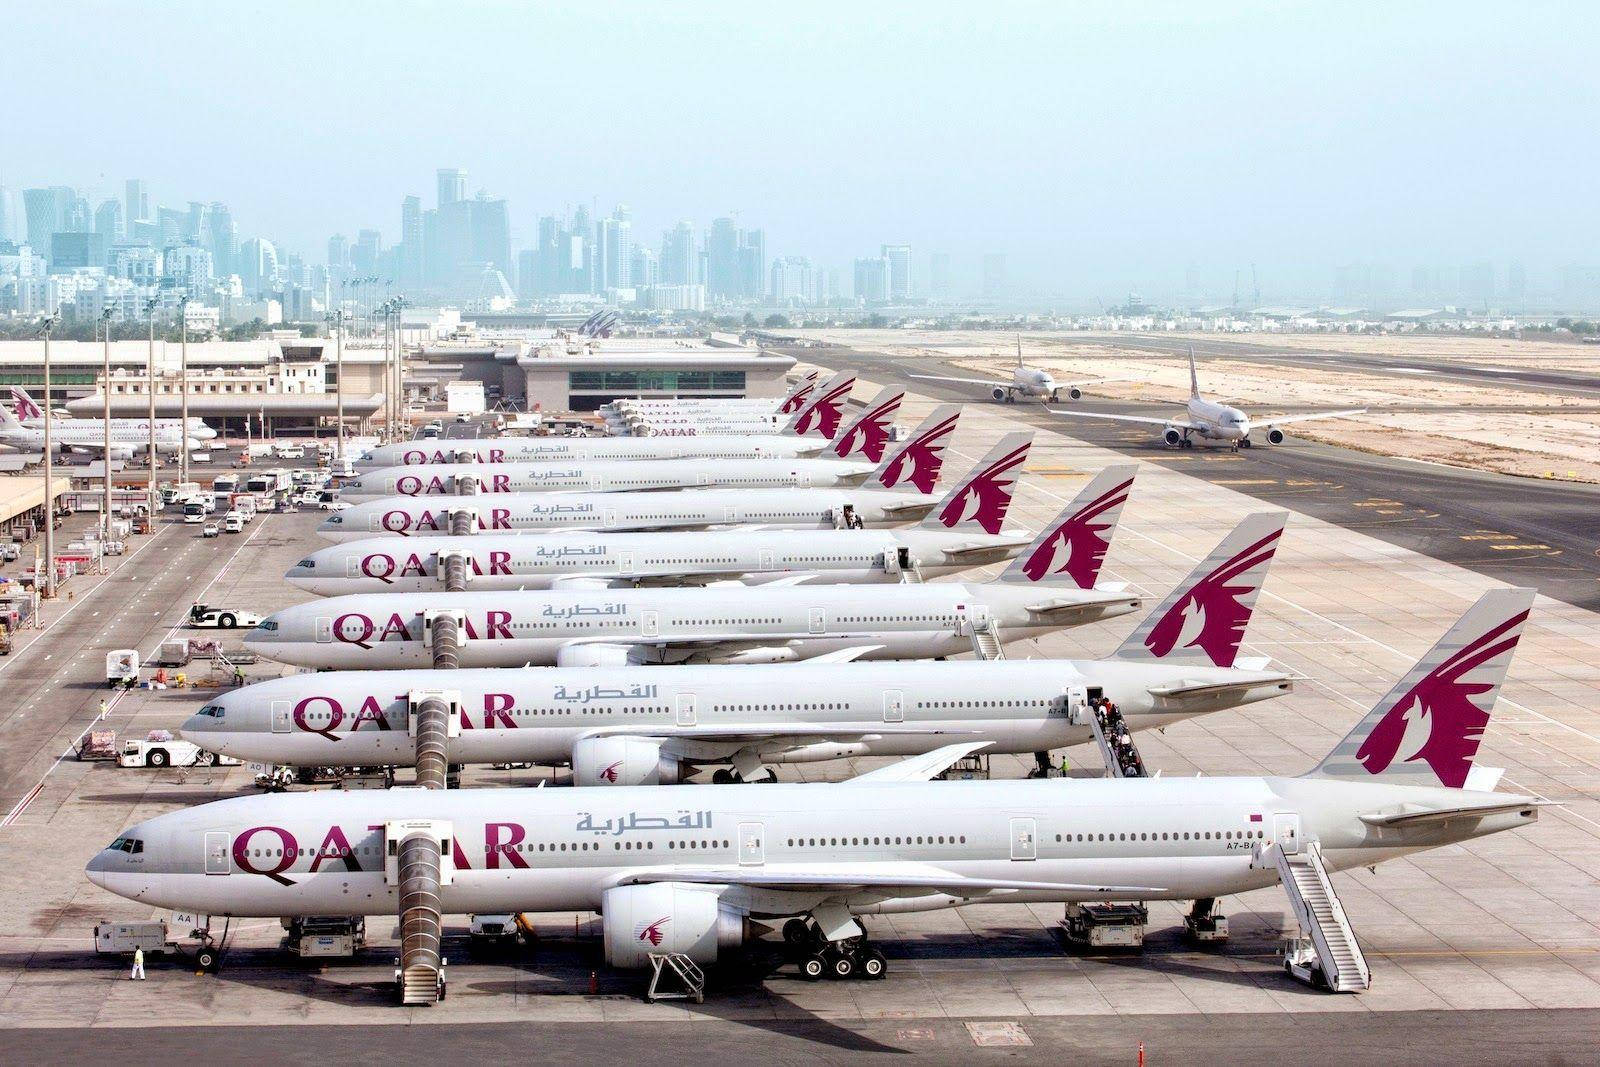 Fleet Of Qatar Airways Airplanes Wallpaper